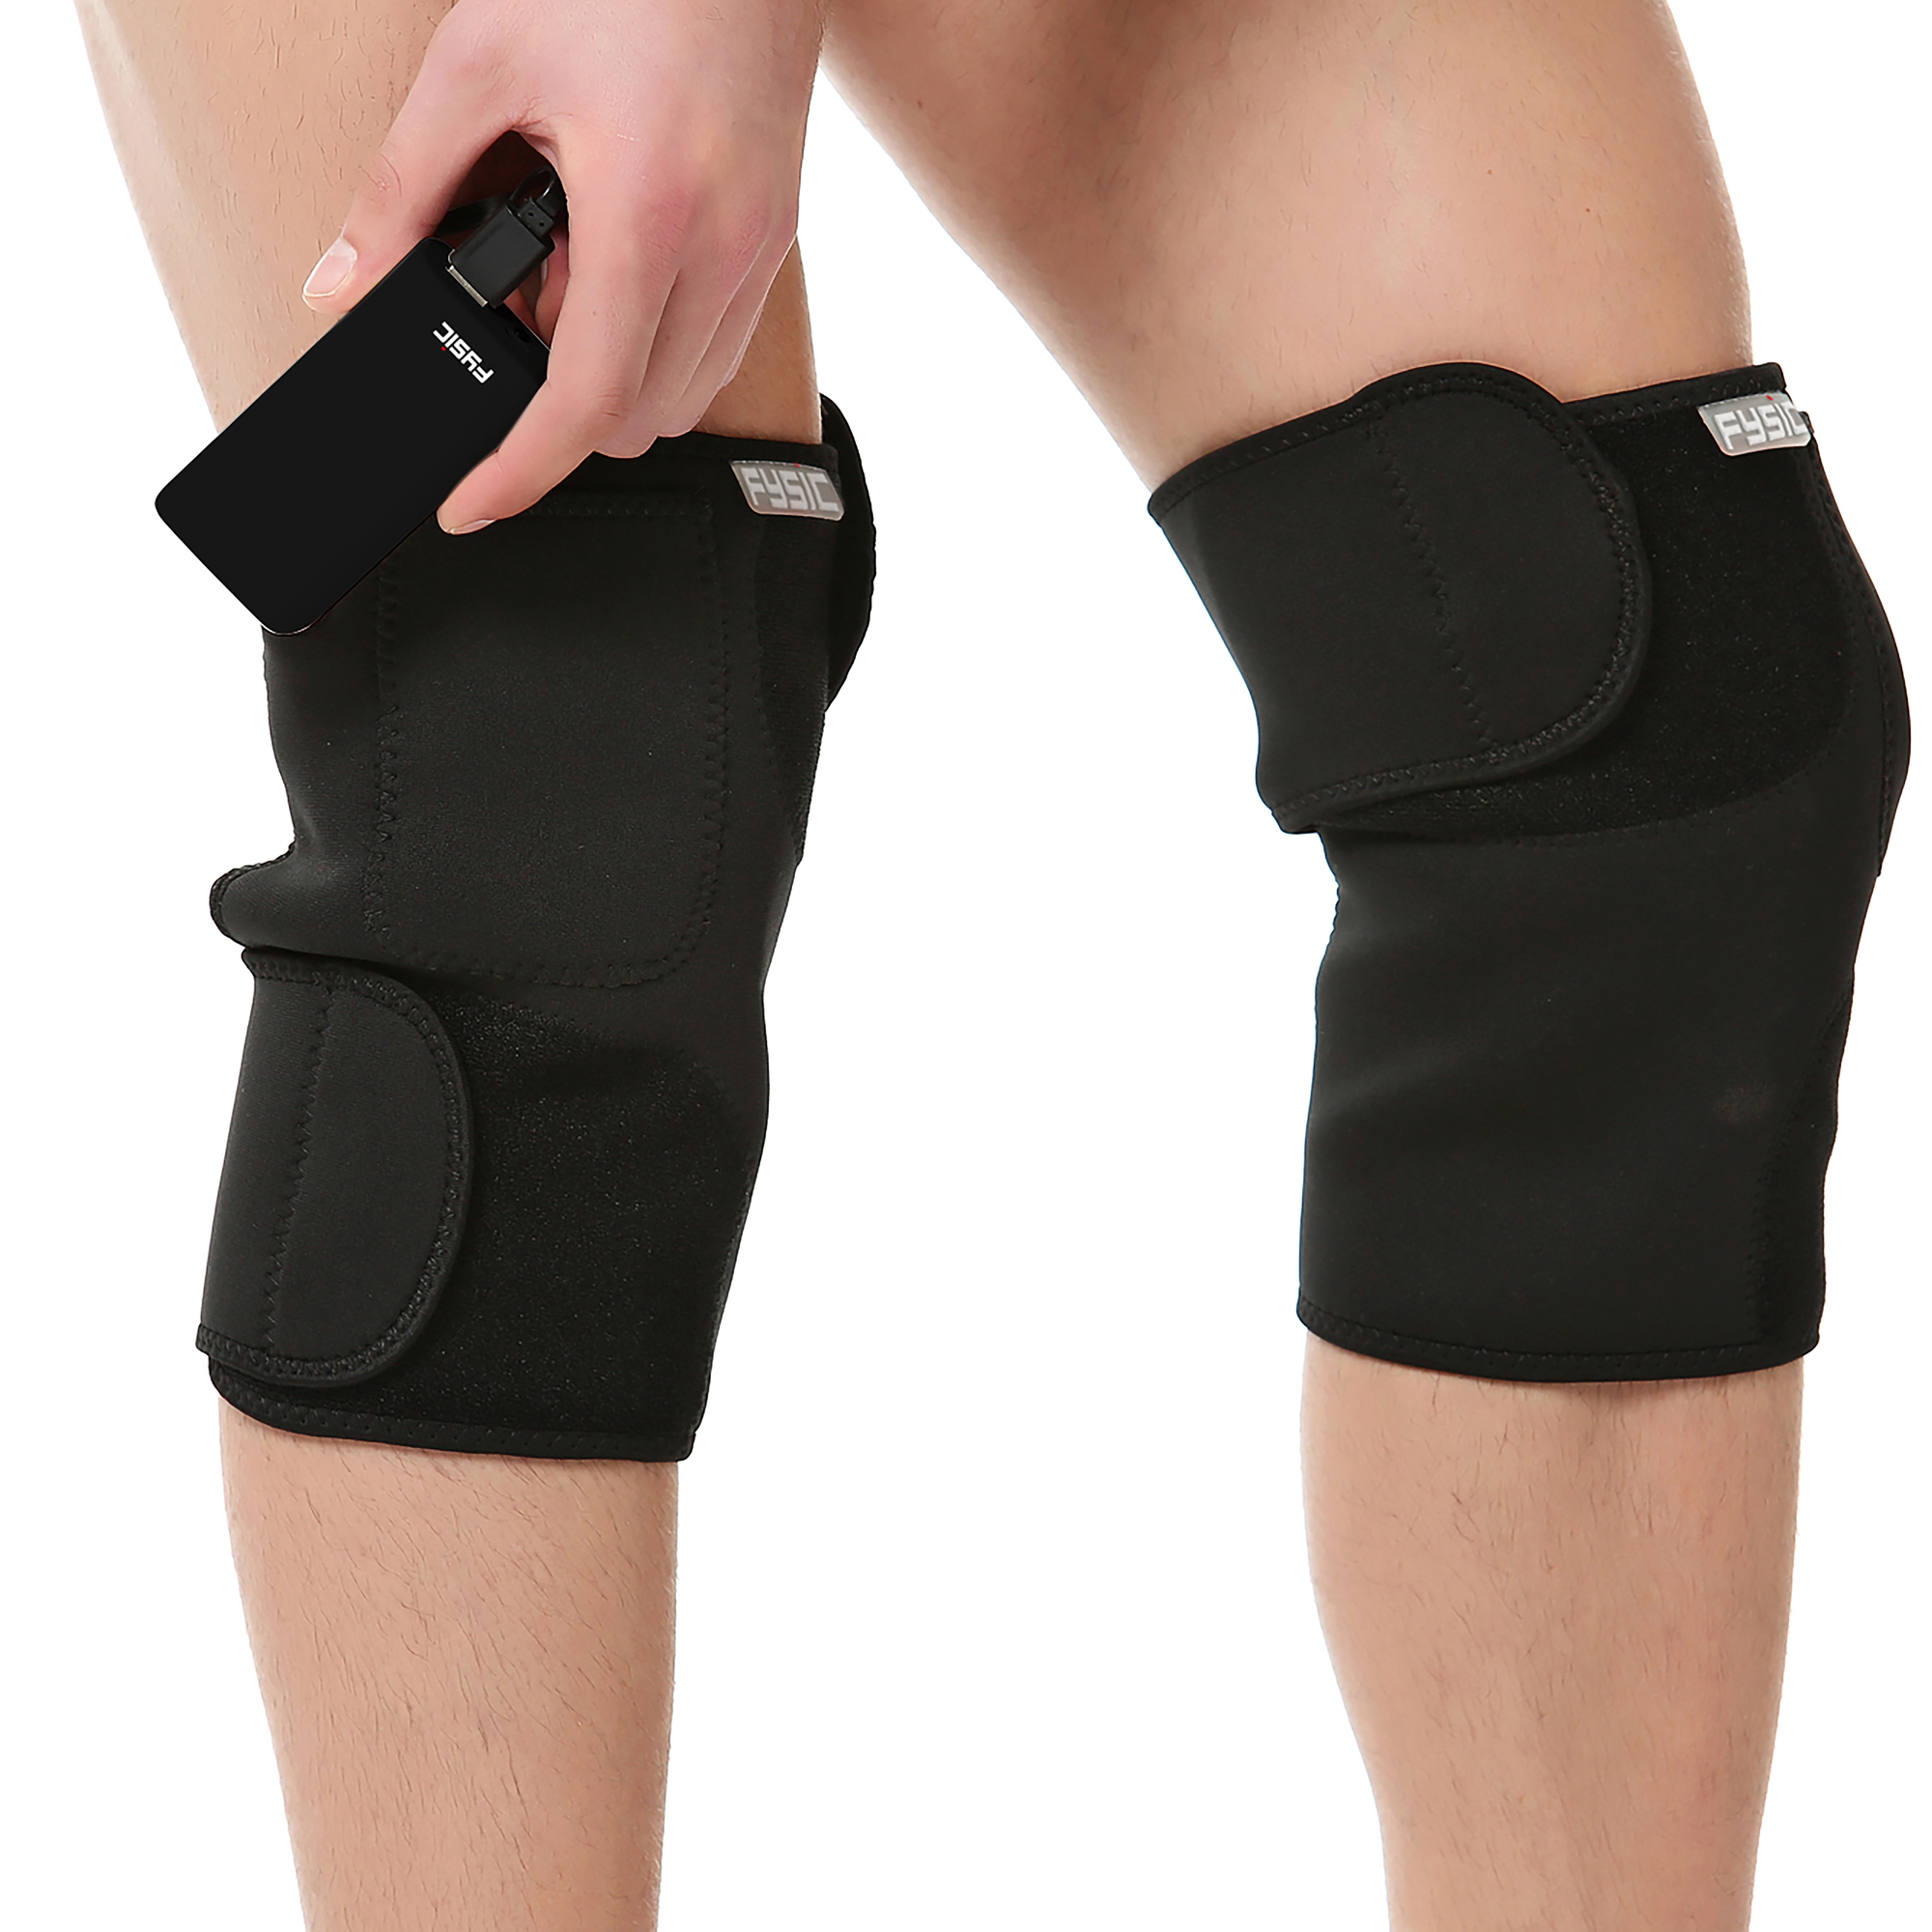 FYSIC FHP-180R - Kabellose Wärmebandage das rechte - für Wärmebandage Knie